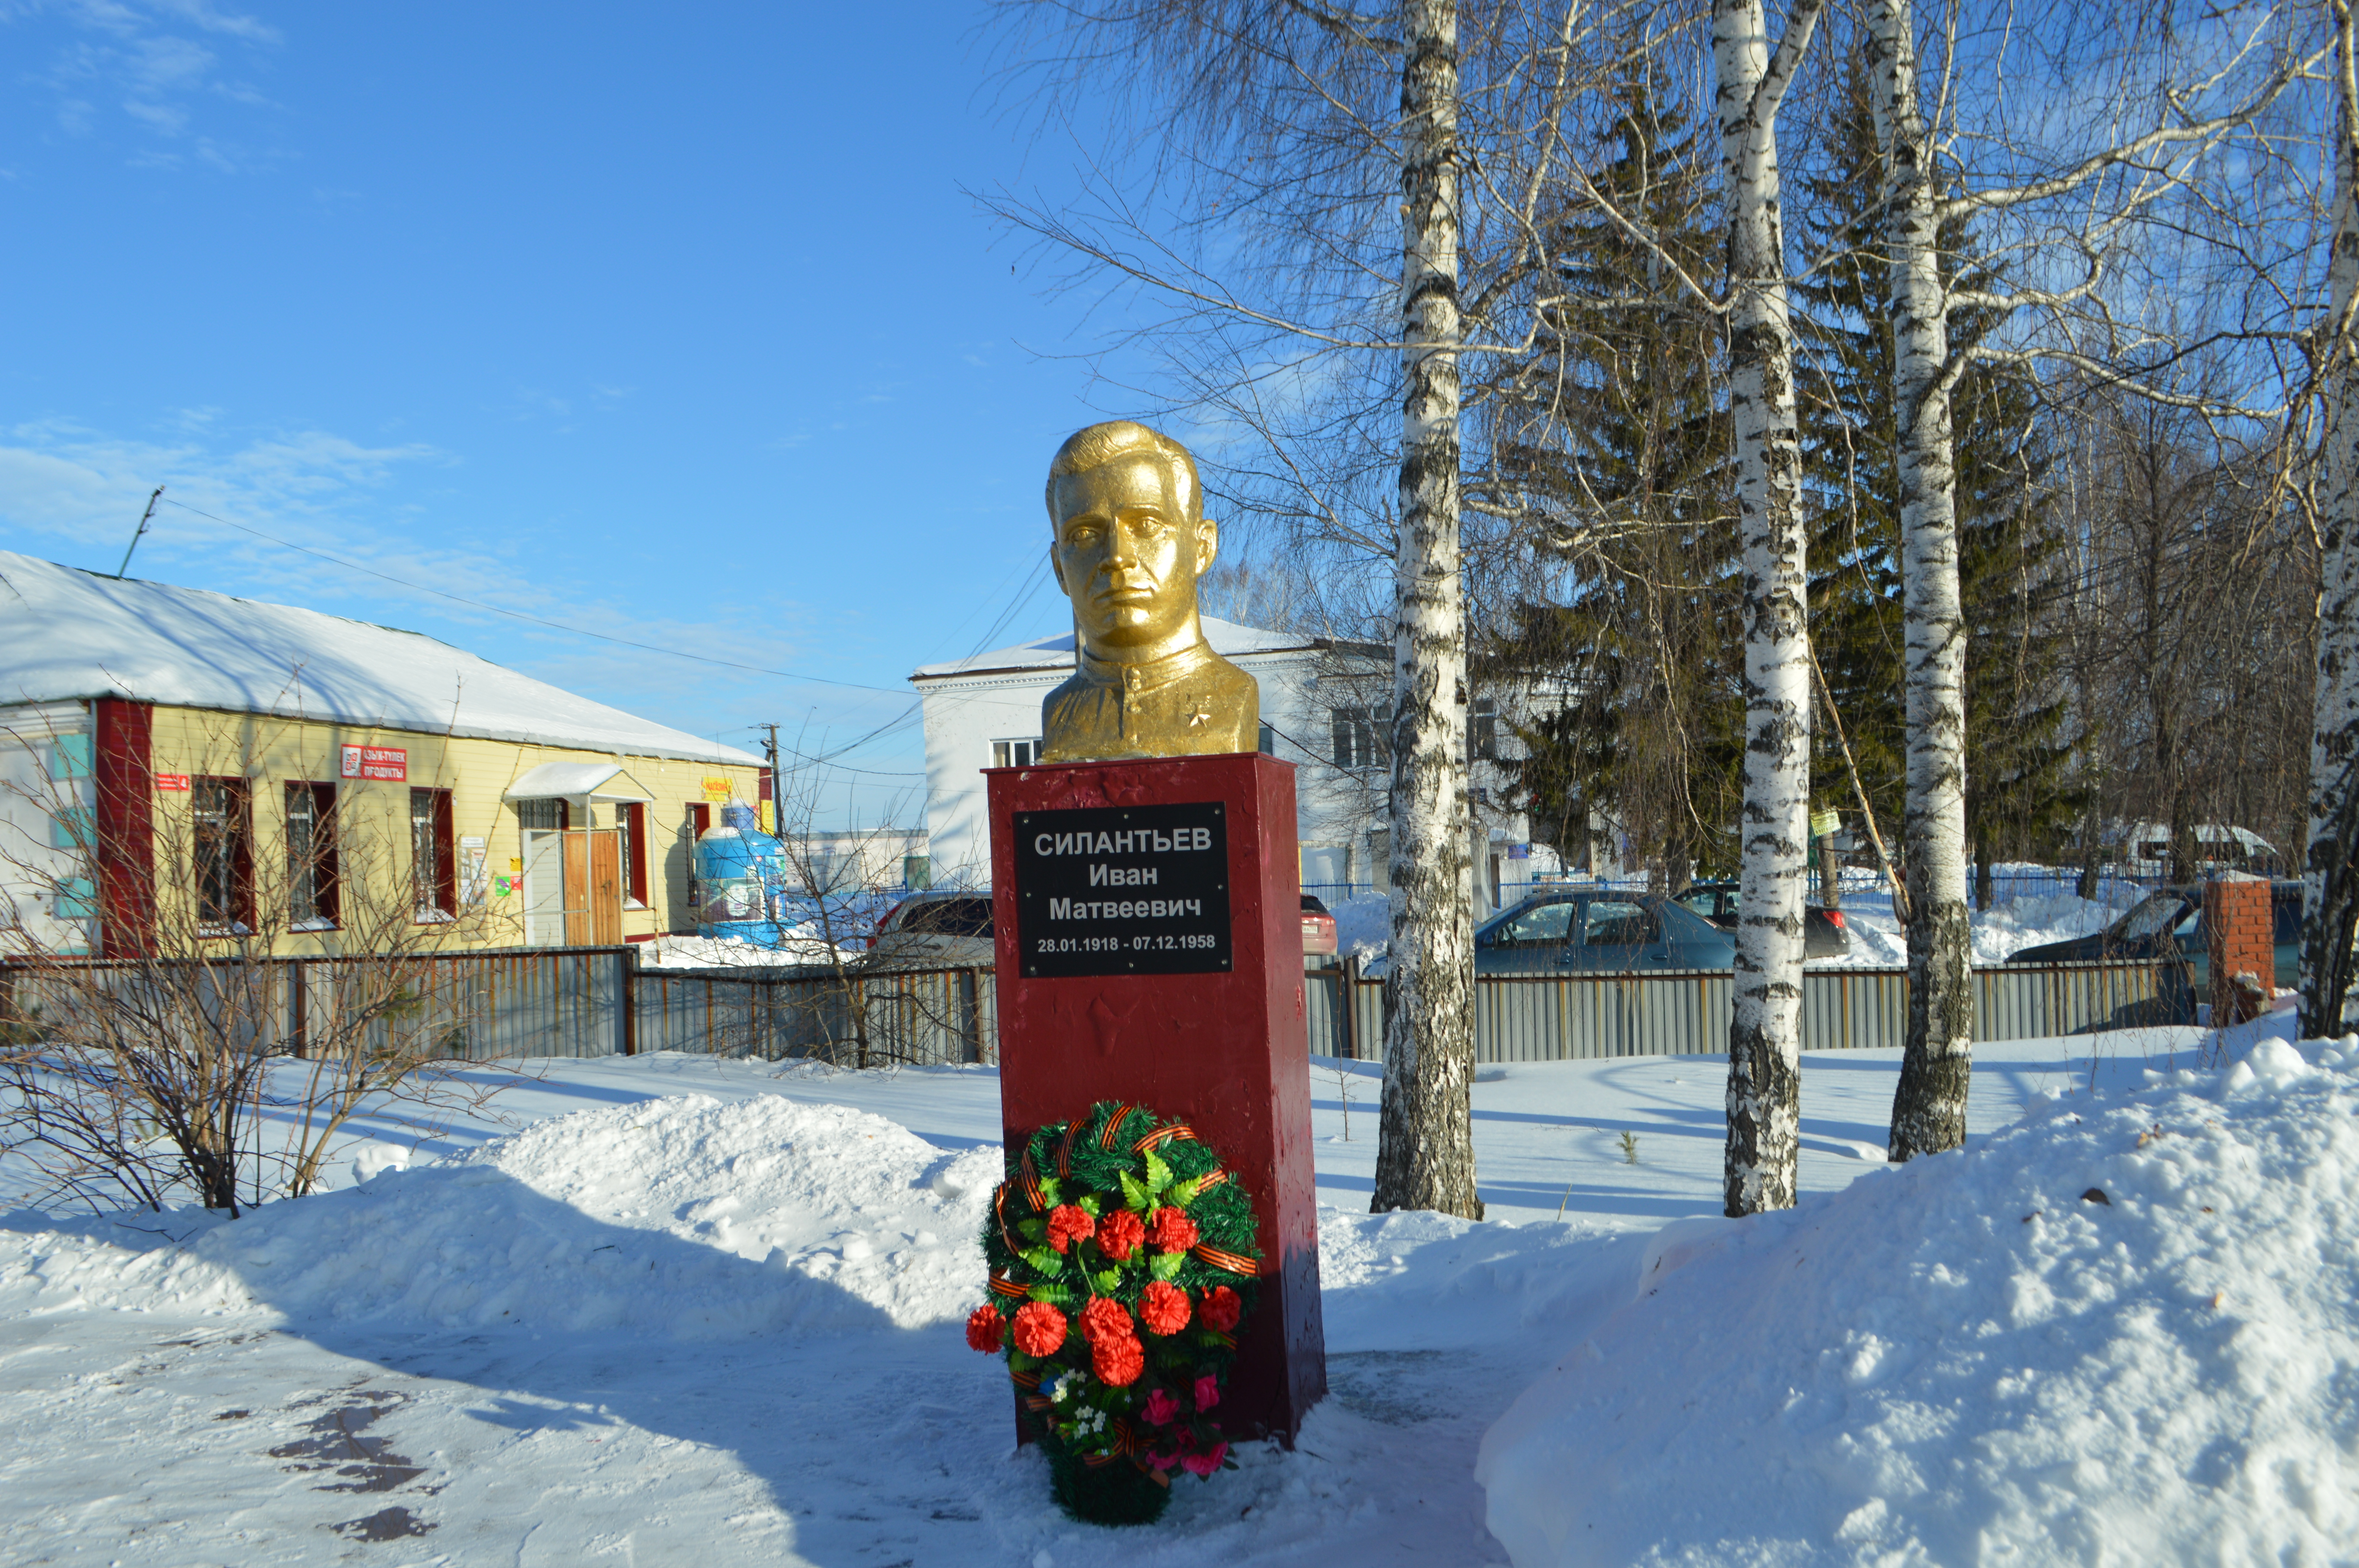 В Иглинском районе состоялся вечер памяти, посвященный 105-летию со дня рождения Героя Советского Союза И. М. Силантьева.